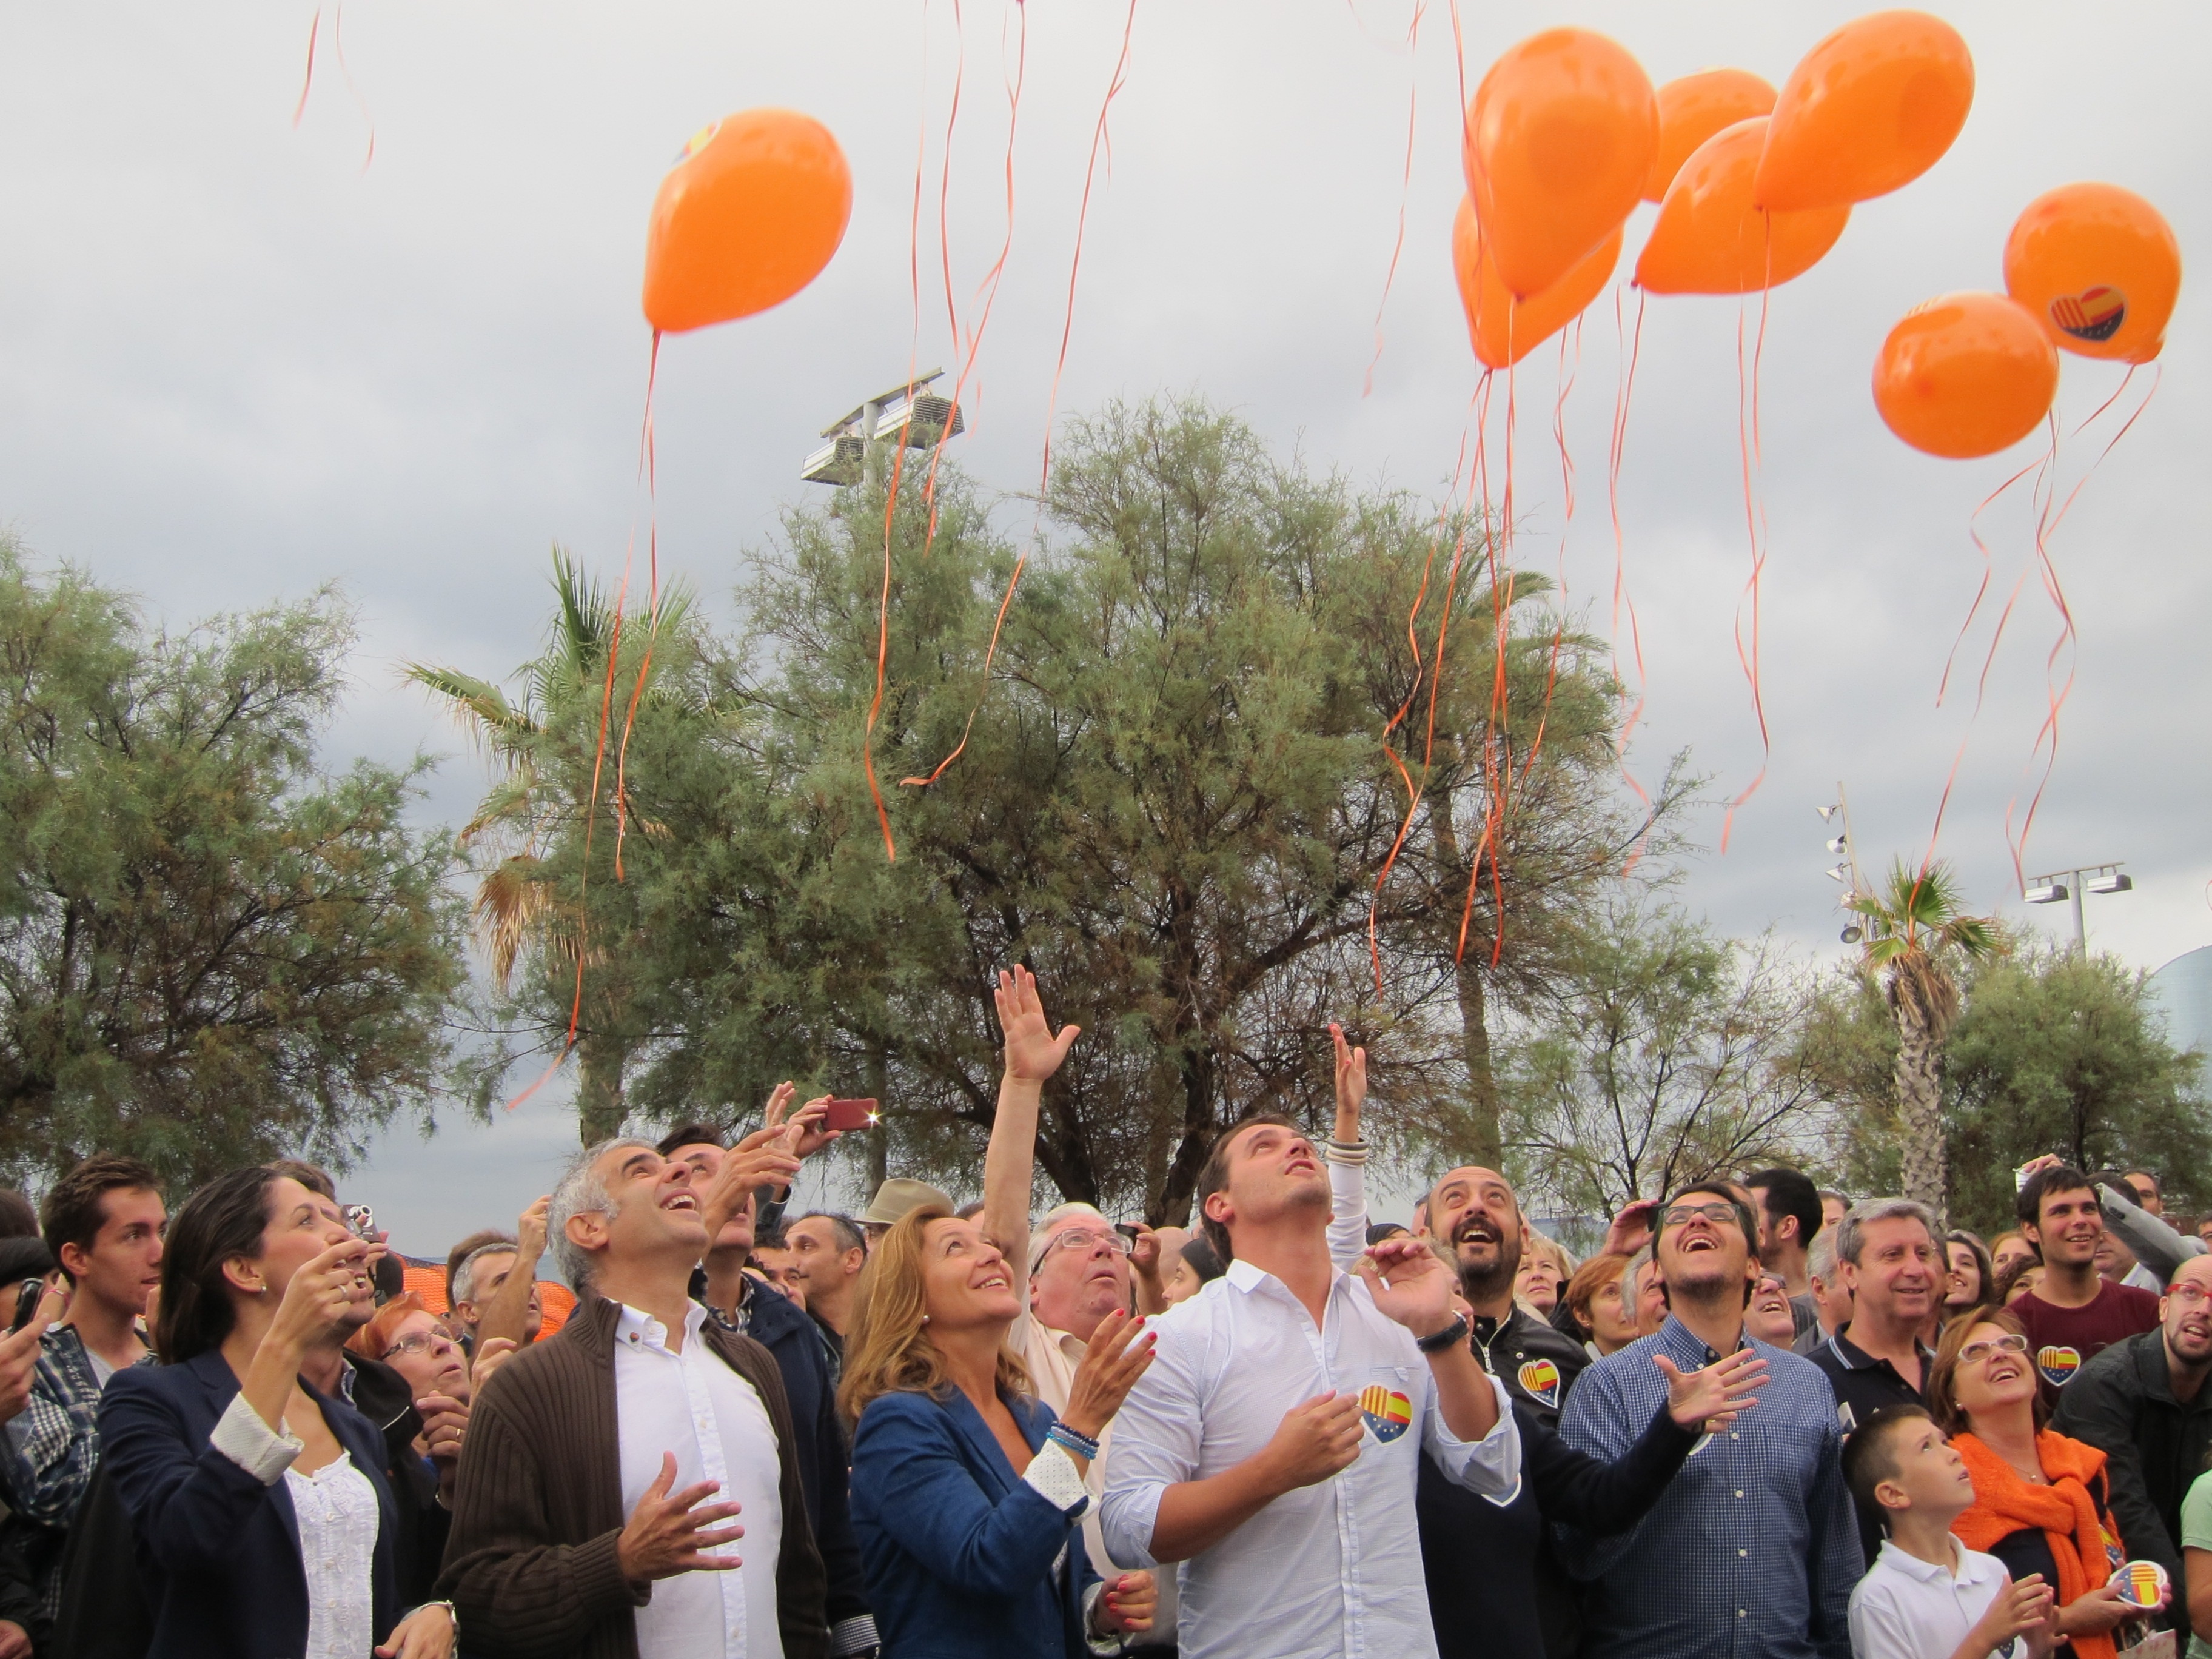 C»s lanza 2.000 globos en Barcelona para decir «no a las cadenas»